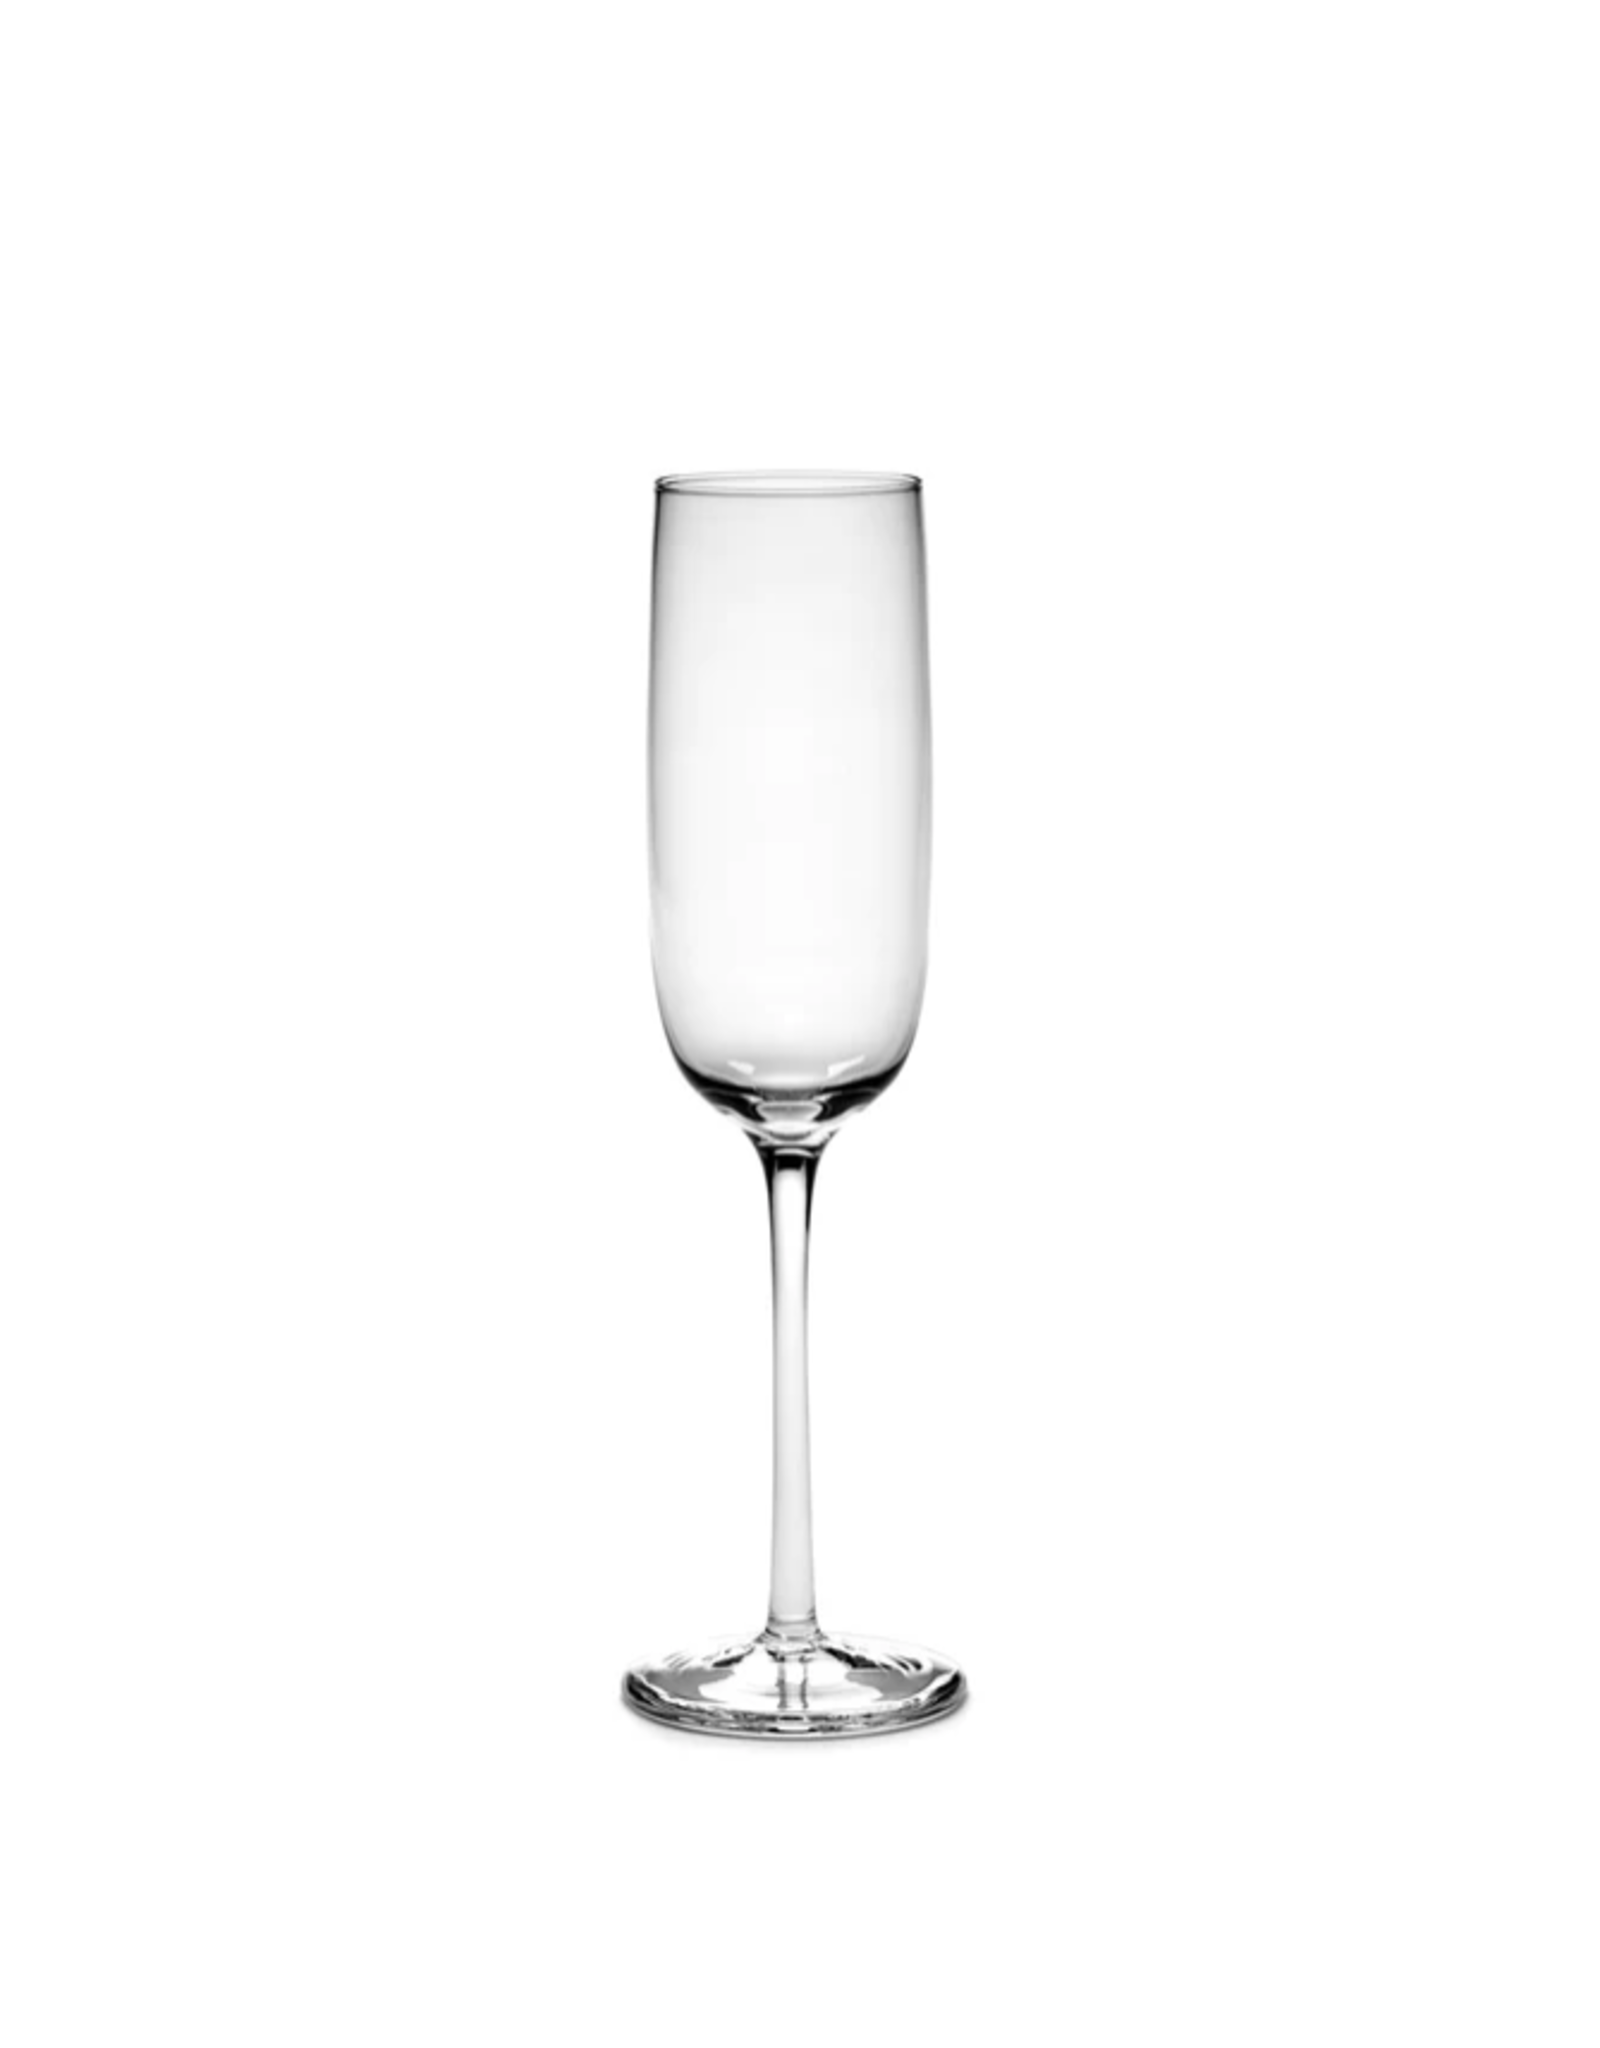 Serax NV Champagne Passe Partout Glass